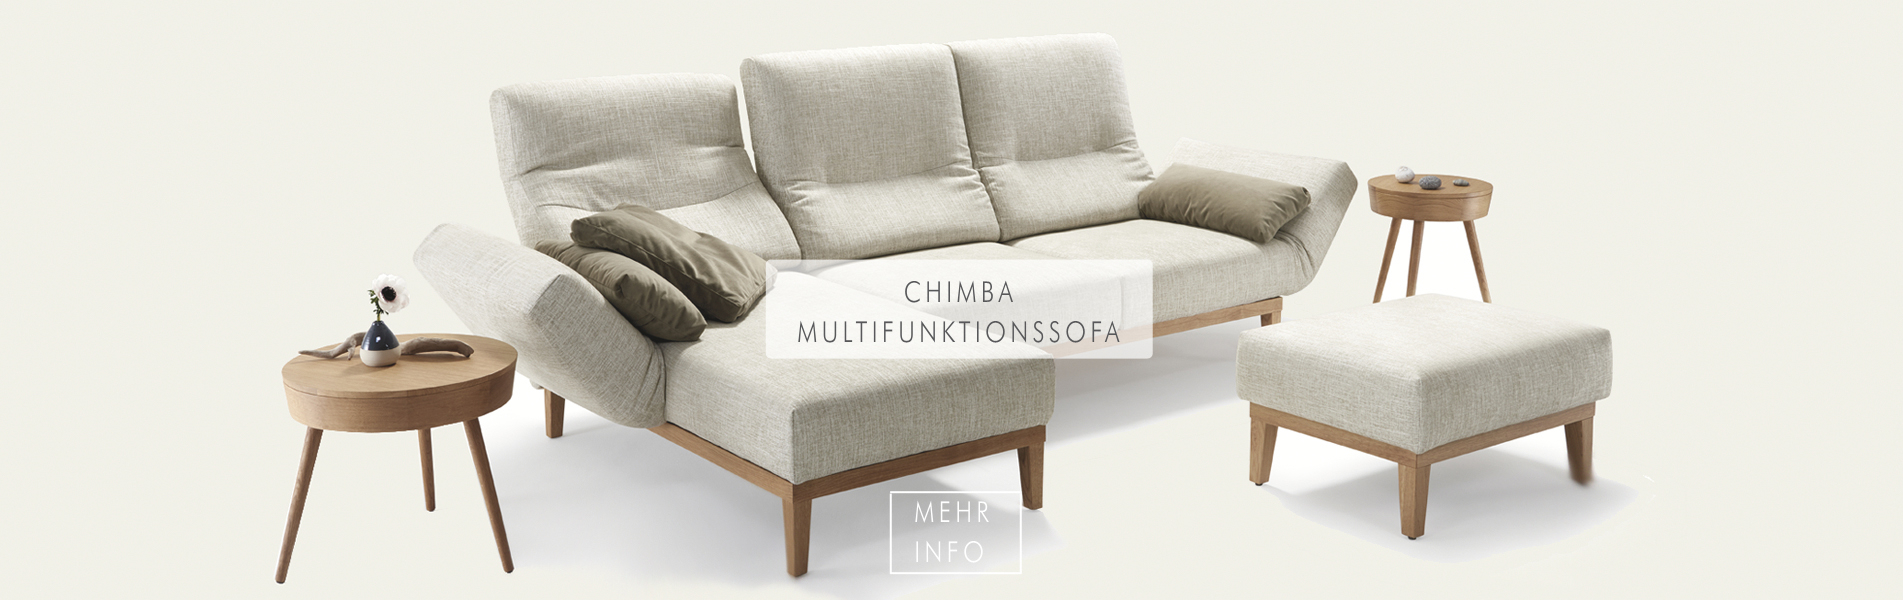 Chimba - ein Multifunktionssofa mit vielen Kombinationsmöglichkeiten